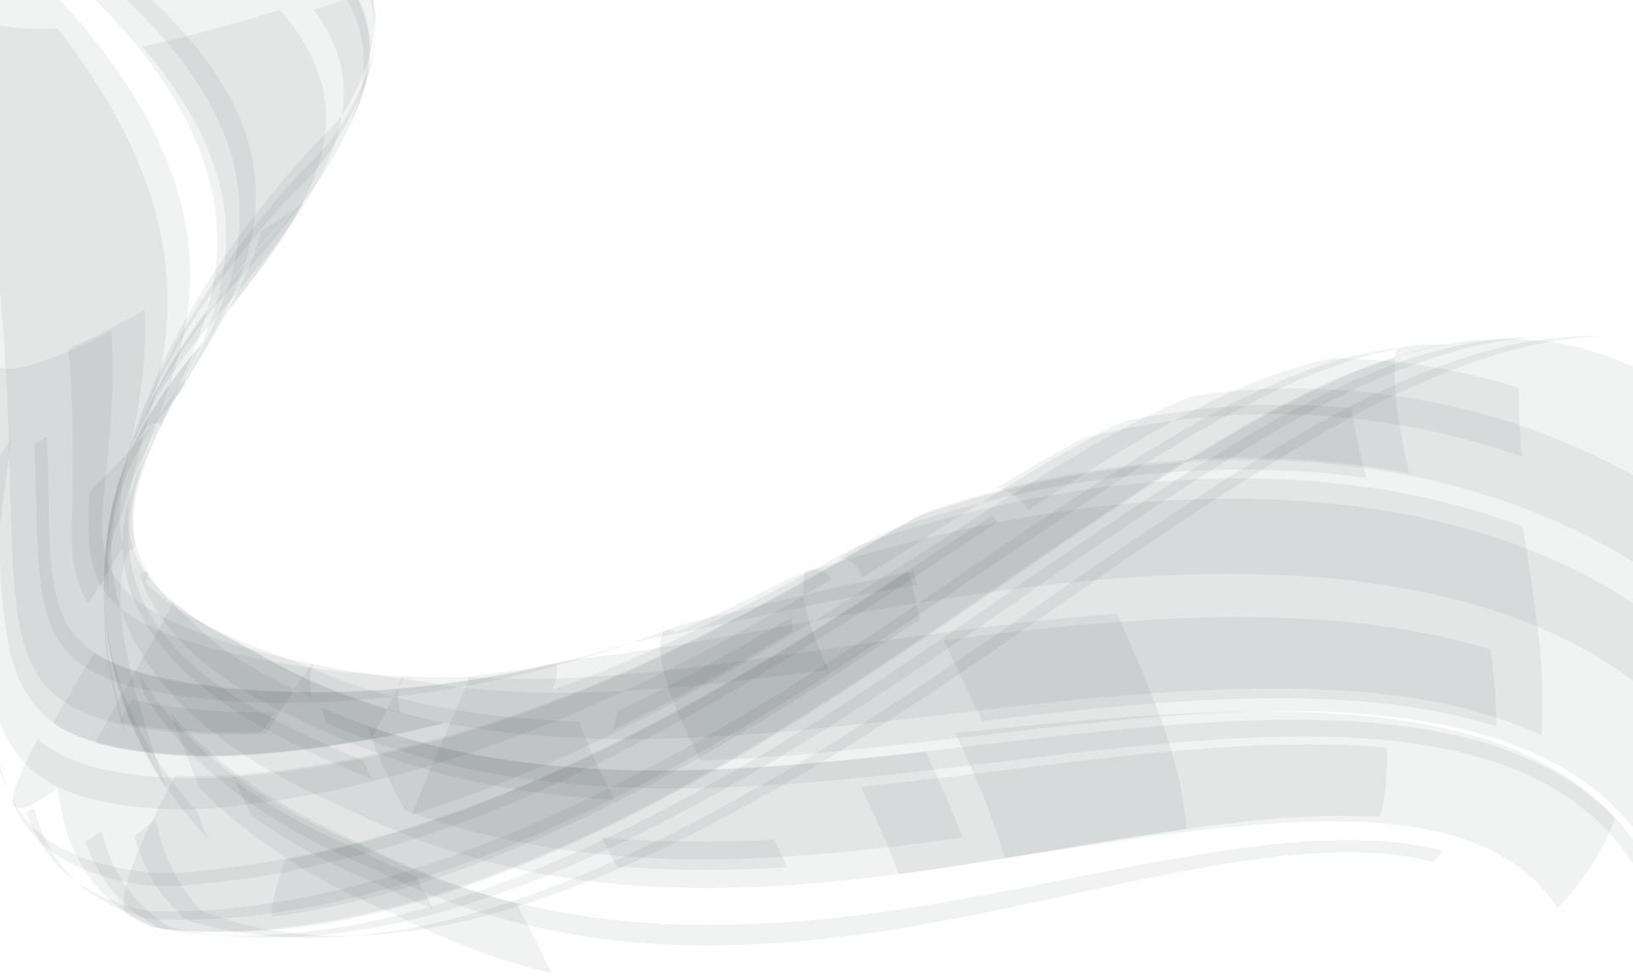 Flujo de curva de onda gris abstracto en blanco geométrico con diseño de espacio en blanco ilustración de vector de fondo de tecnología futurista moderna